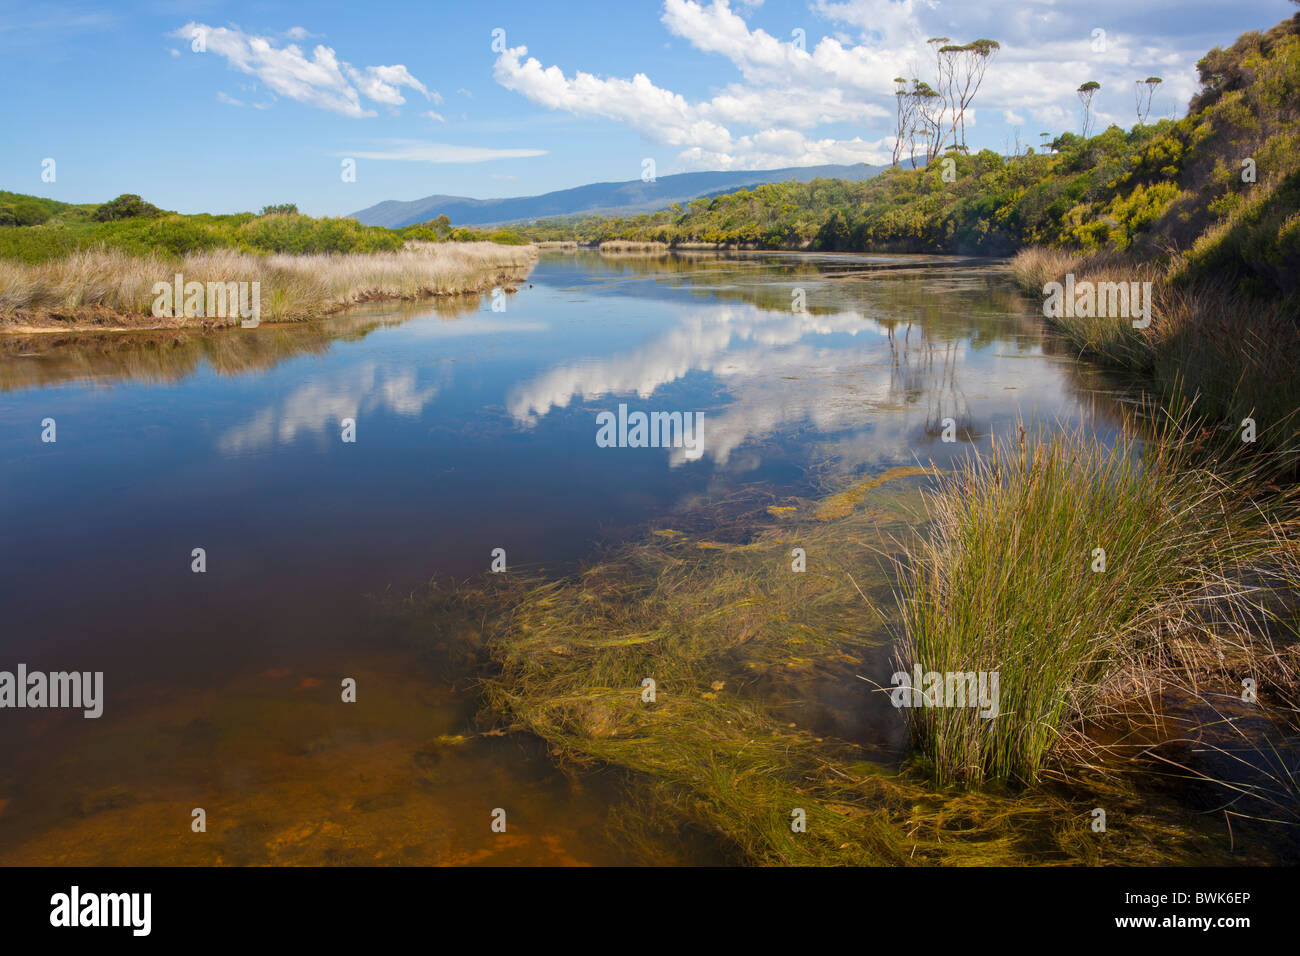 Reflexionen in der Lagune bei Lagunen Strand, Kette von Lagunen nördlich von Bicheno an der Ostküste Tasmaniens Stockfoto